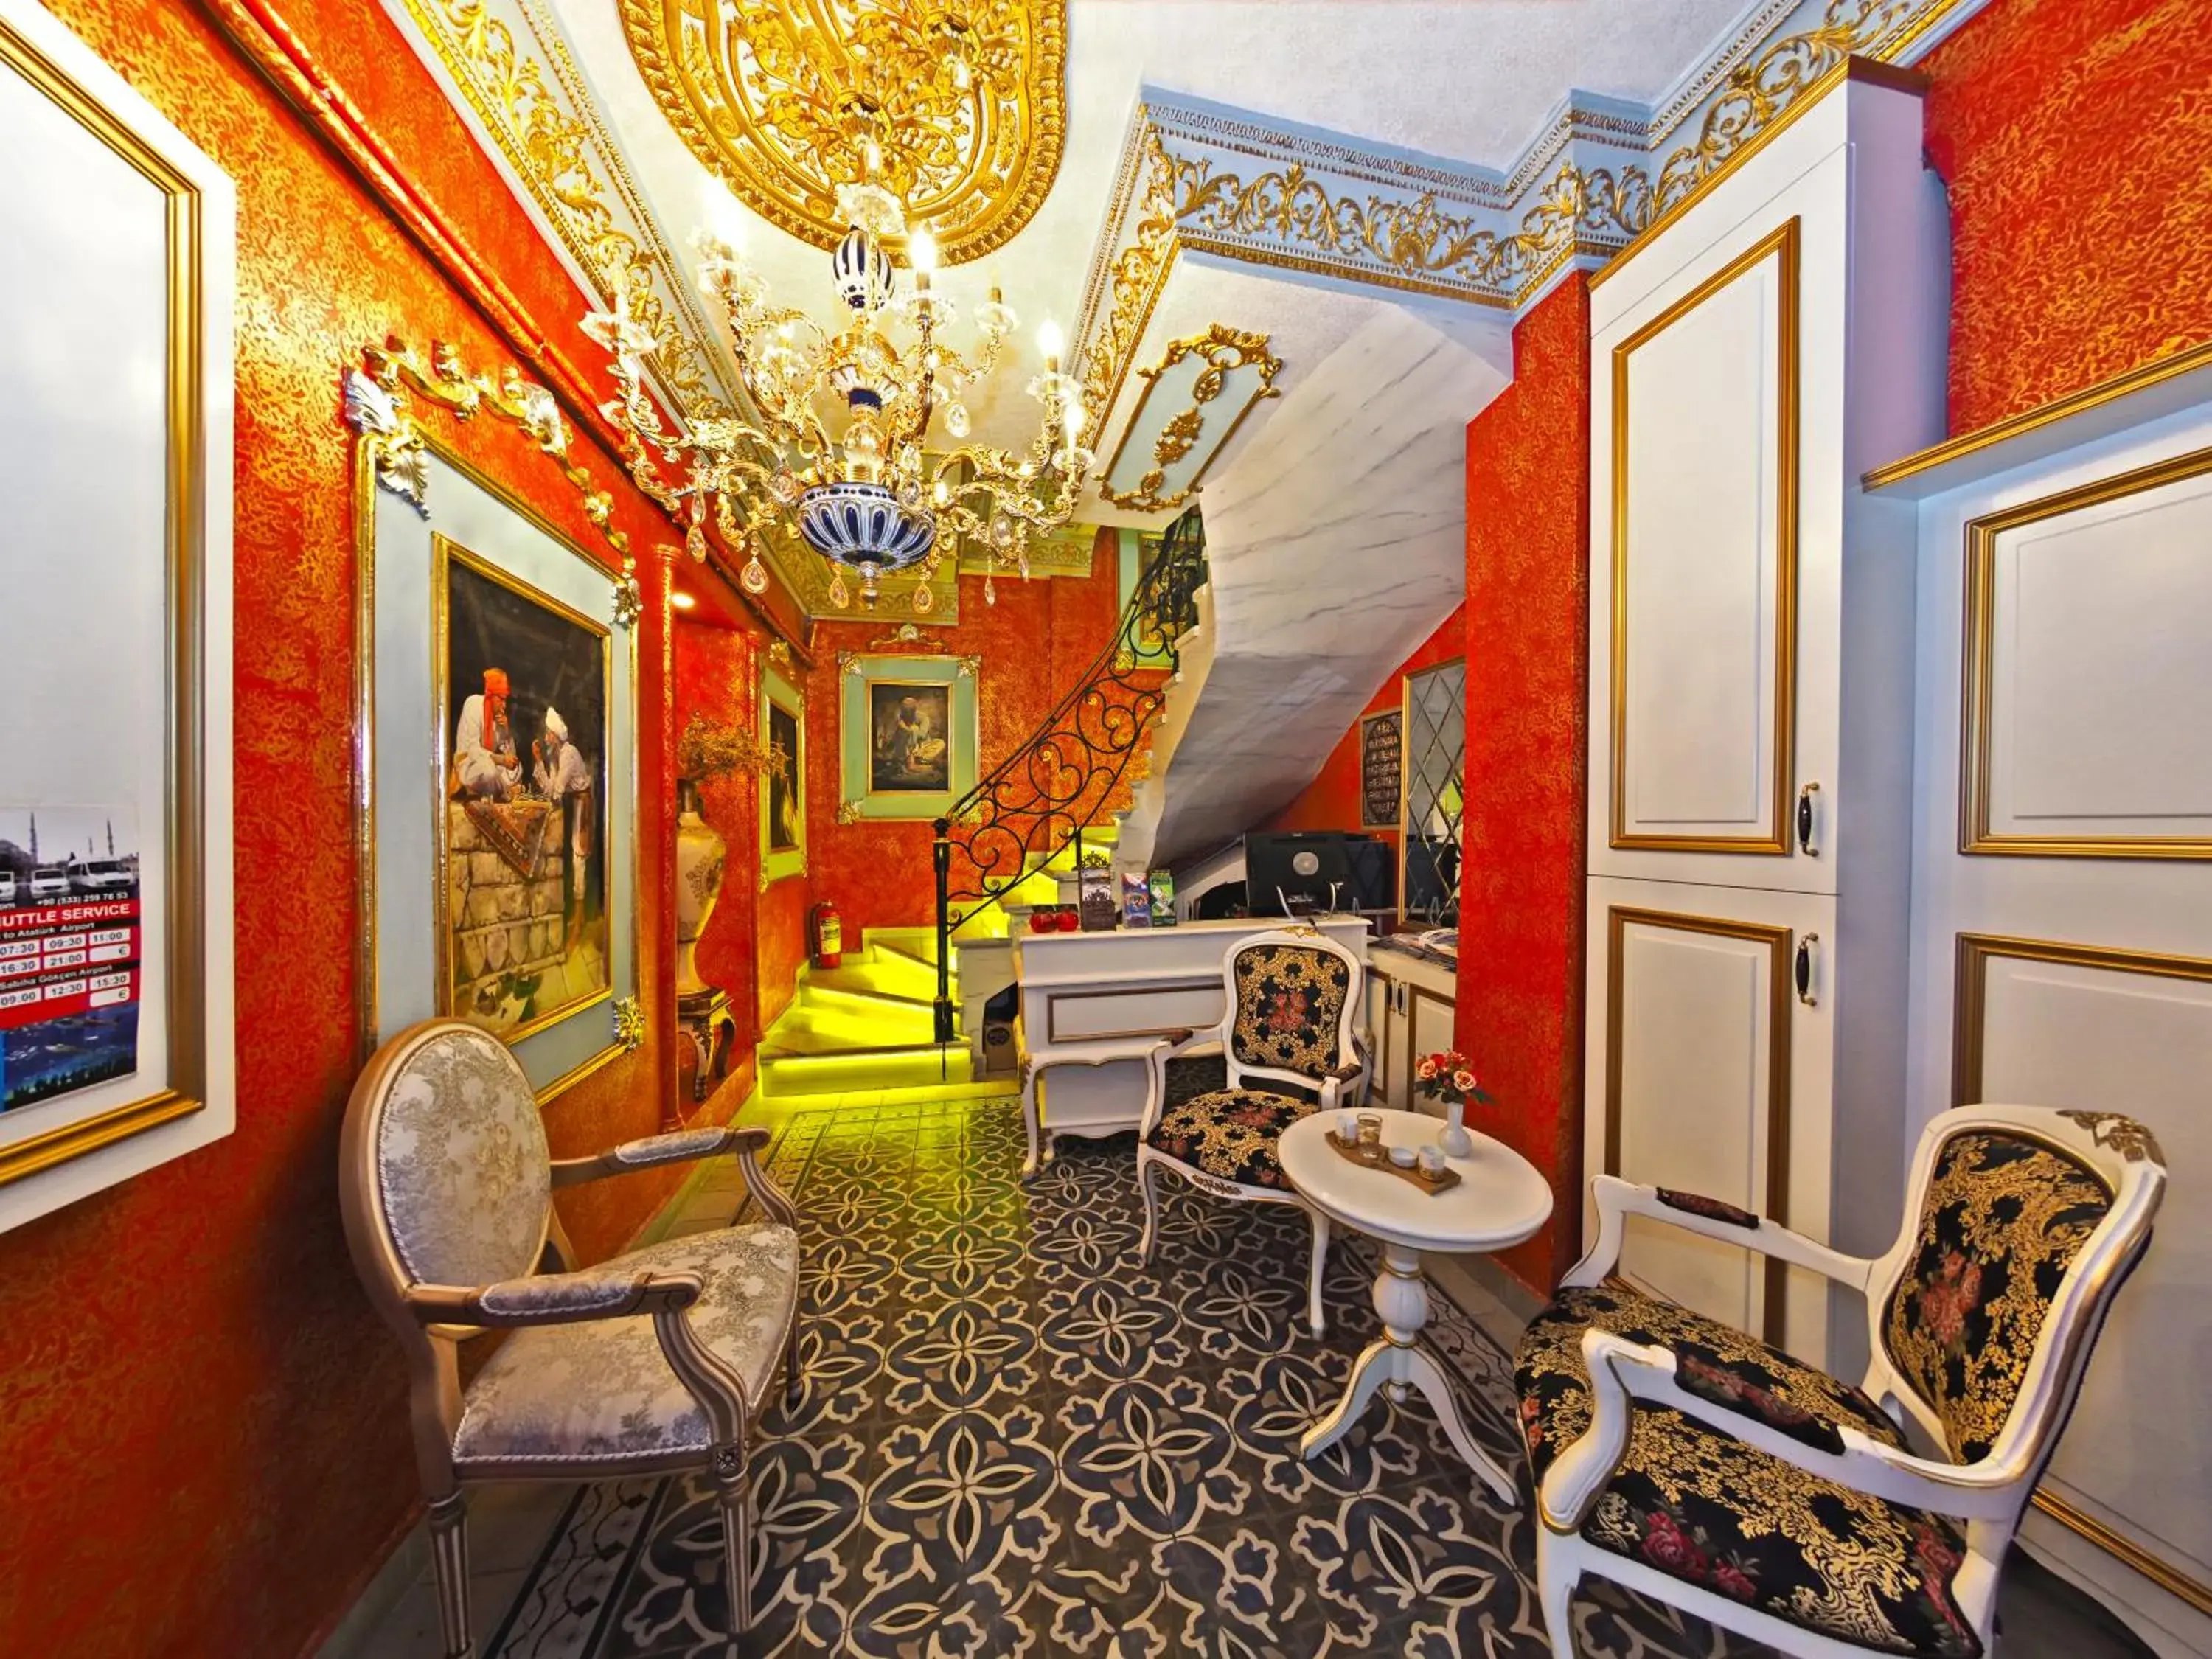 Lobby or reception in Sirkeci Gar Hotel